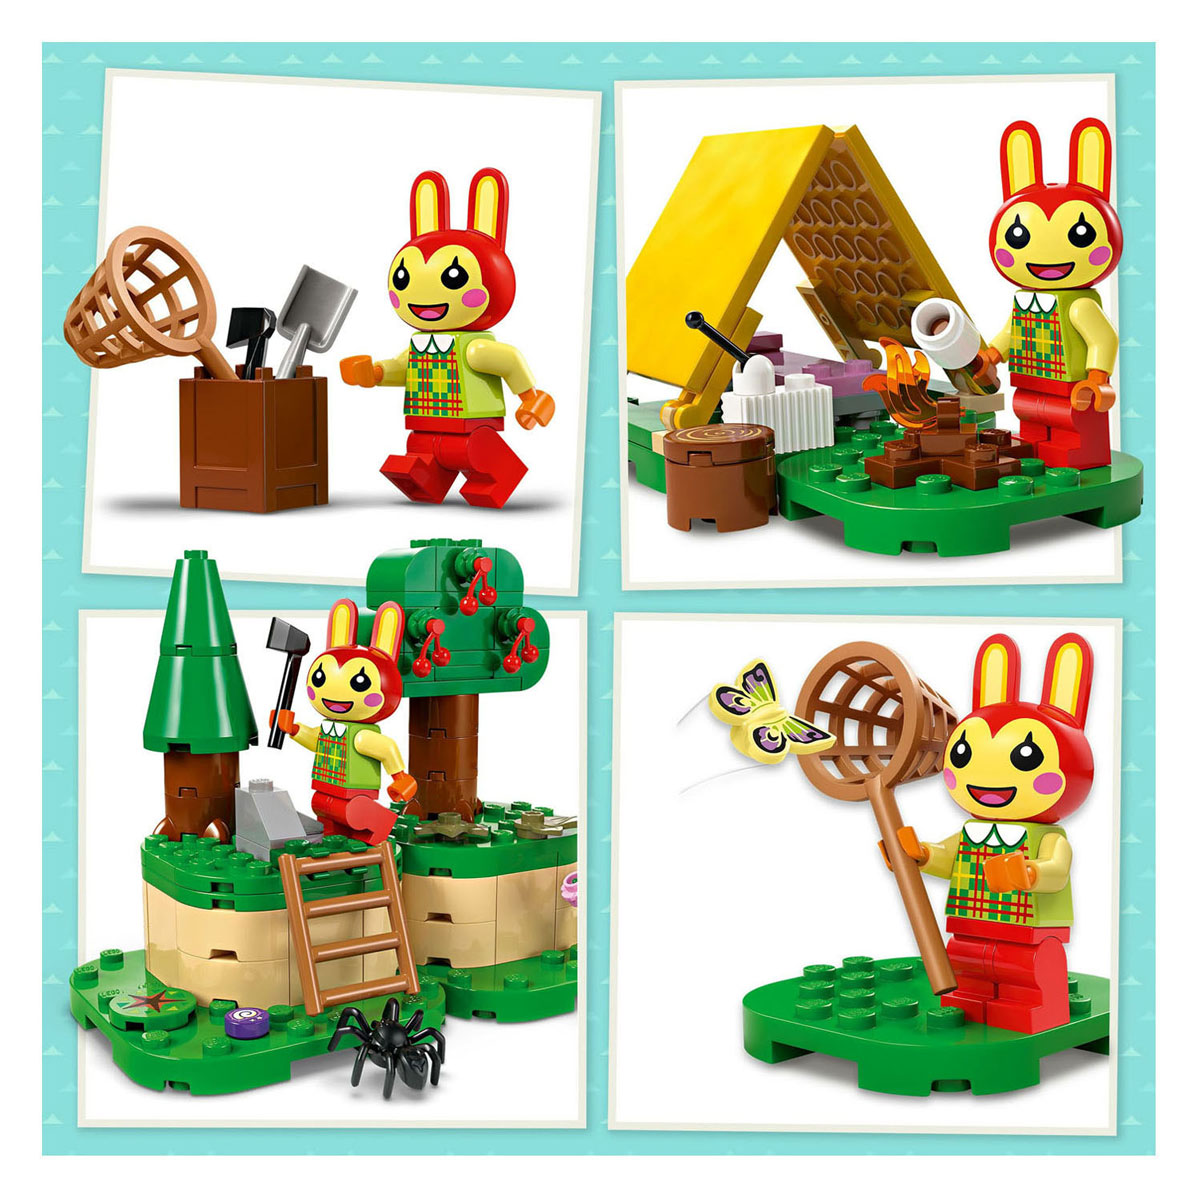 LEGO Animal Crossing 77047 Camping mit Häschen